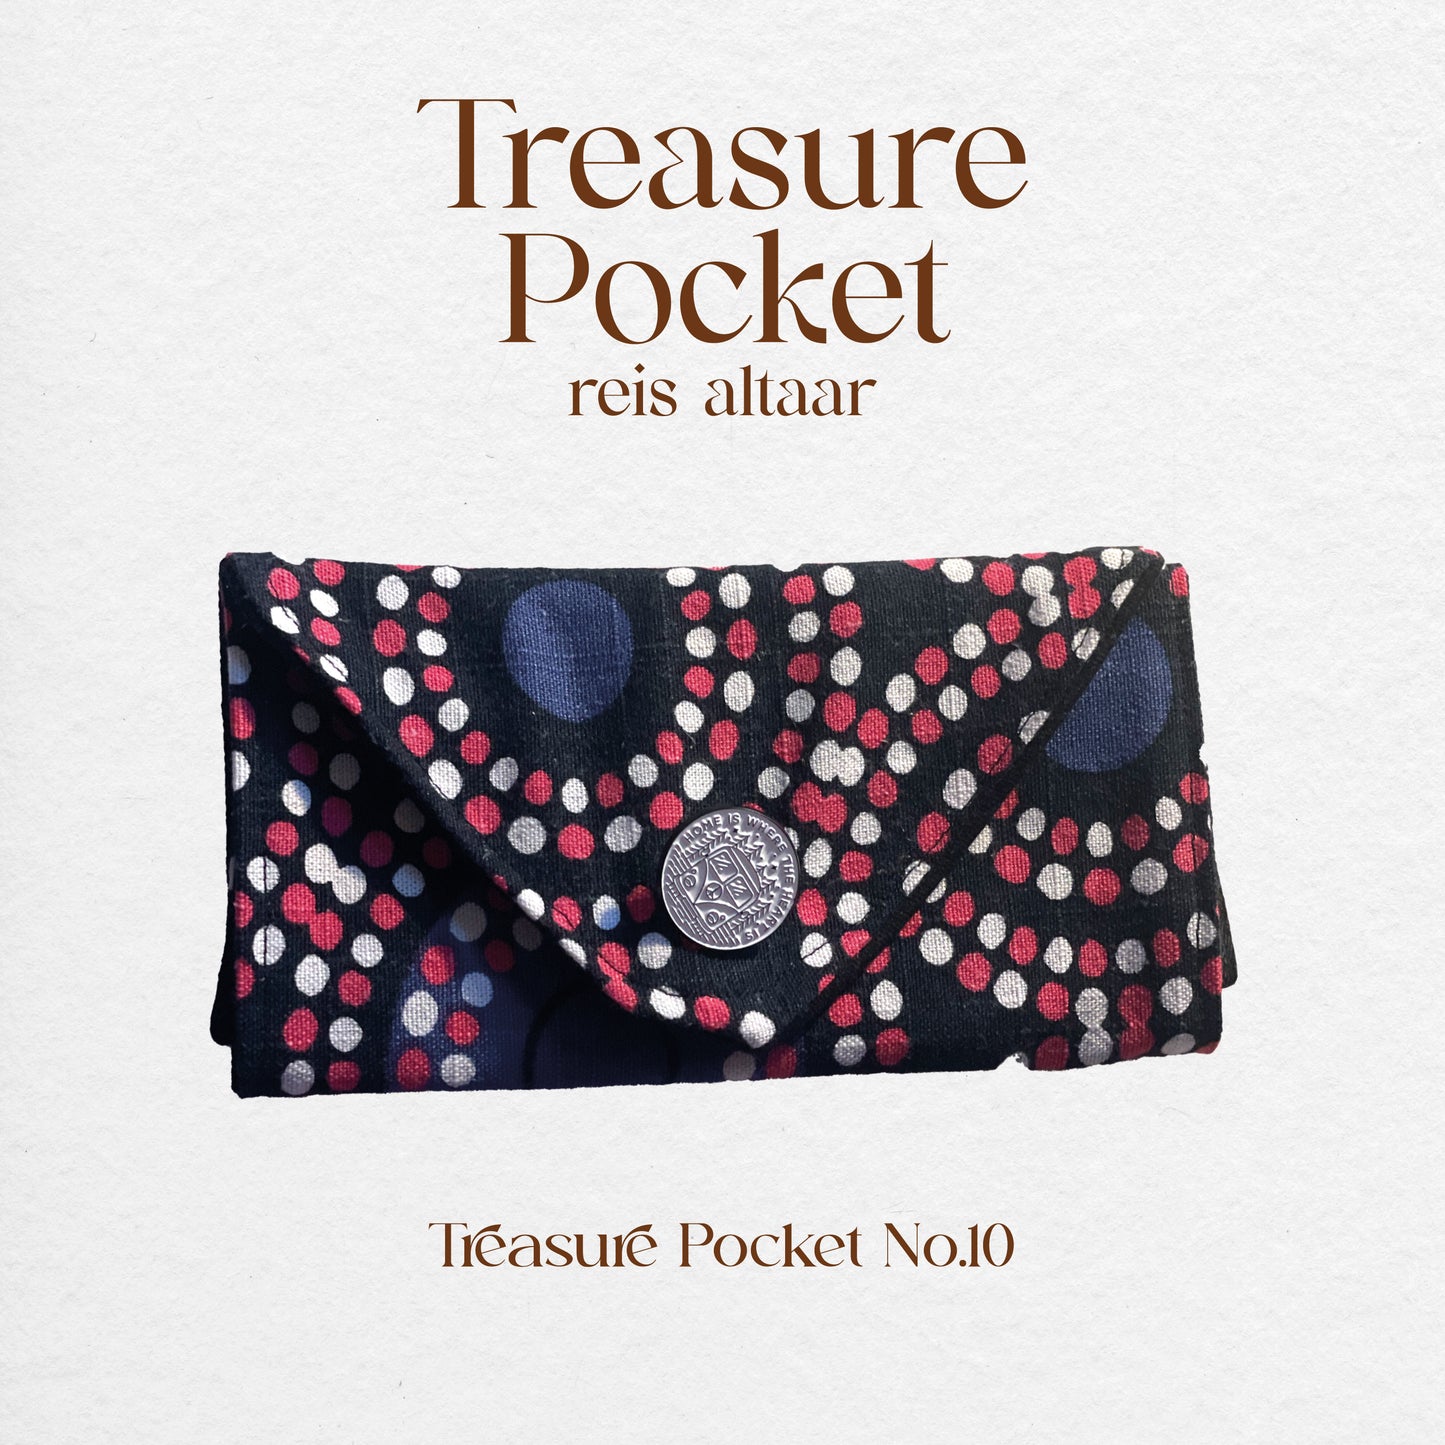 Treasure Pocket No.10